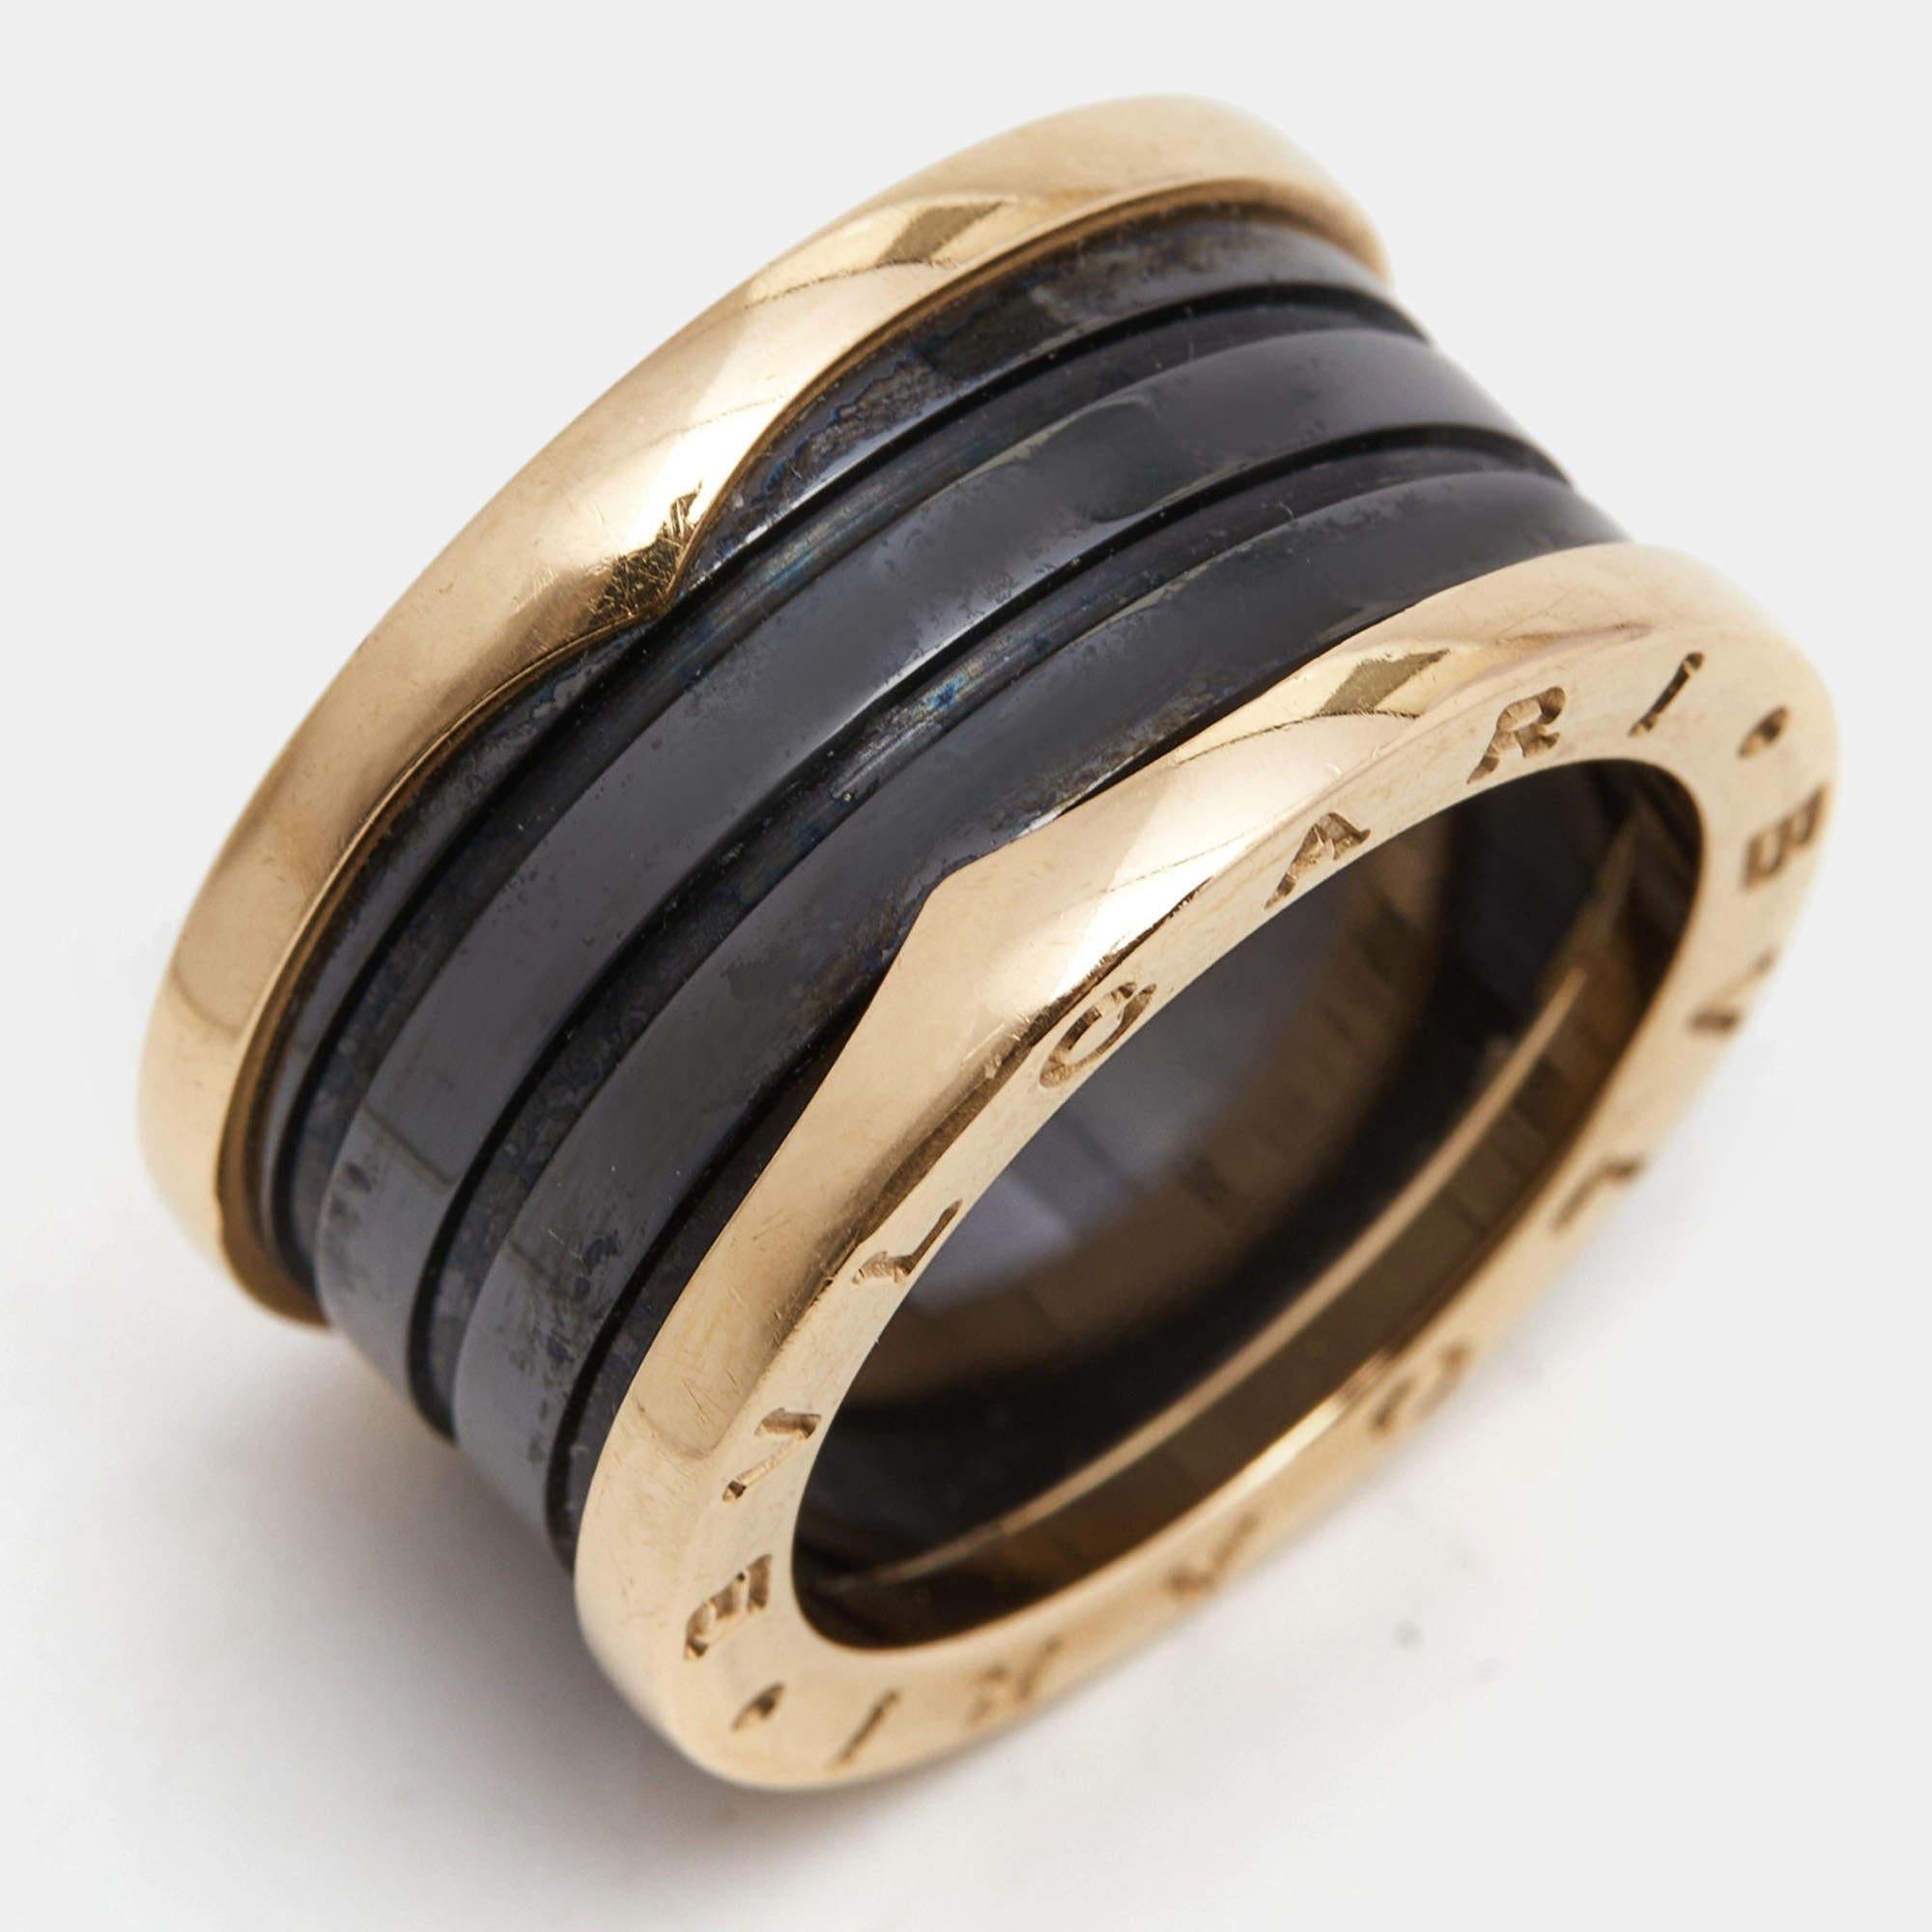 Bvlgari B.Zero1 4-Band Ceramic 18k Rose Gold Ring Size 55 For Sale 4